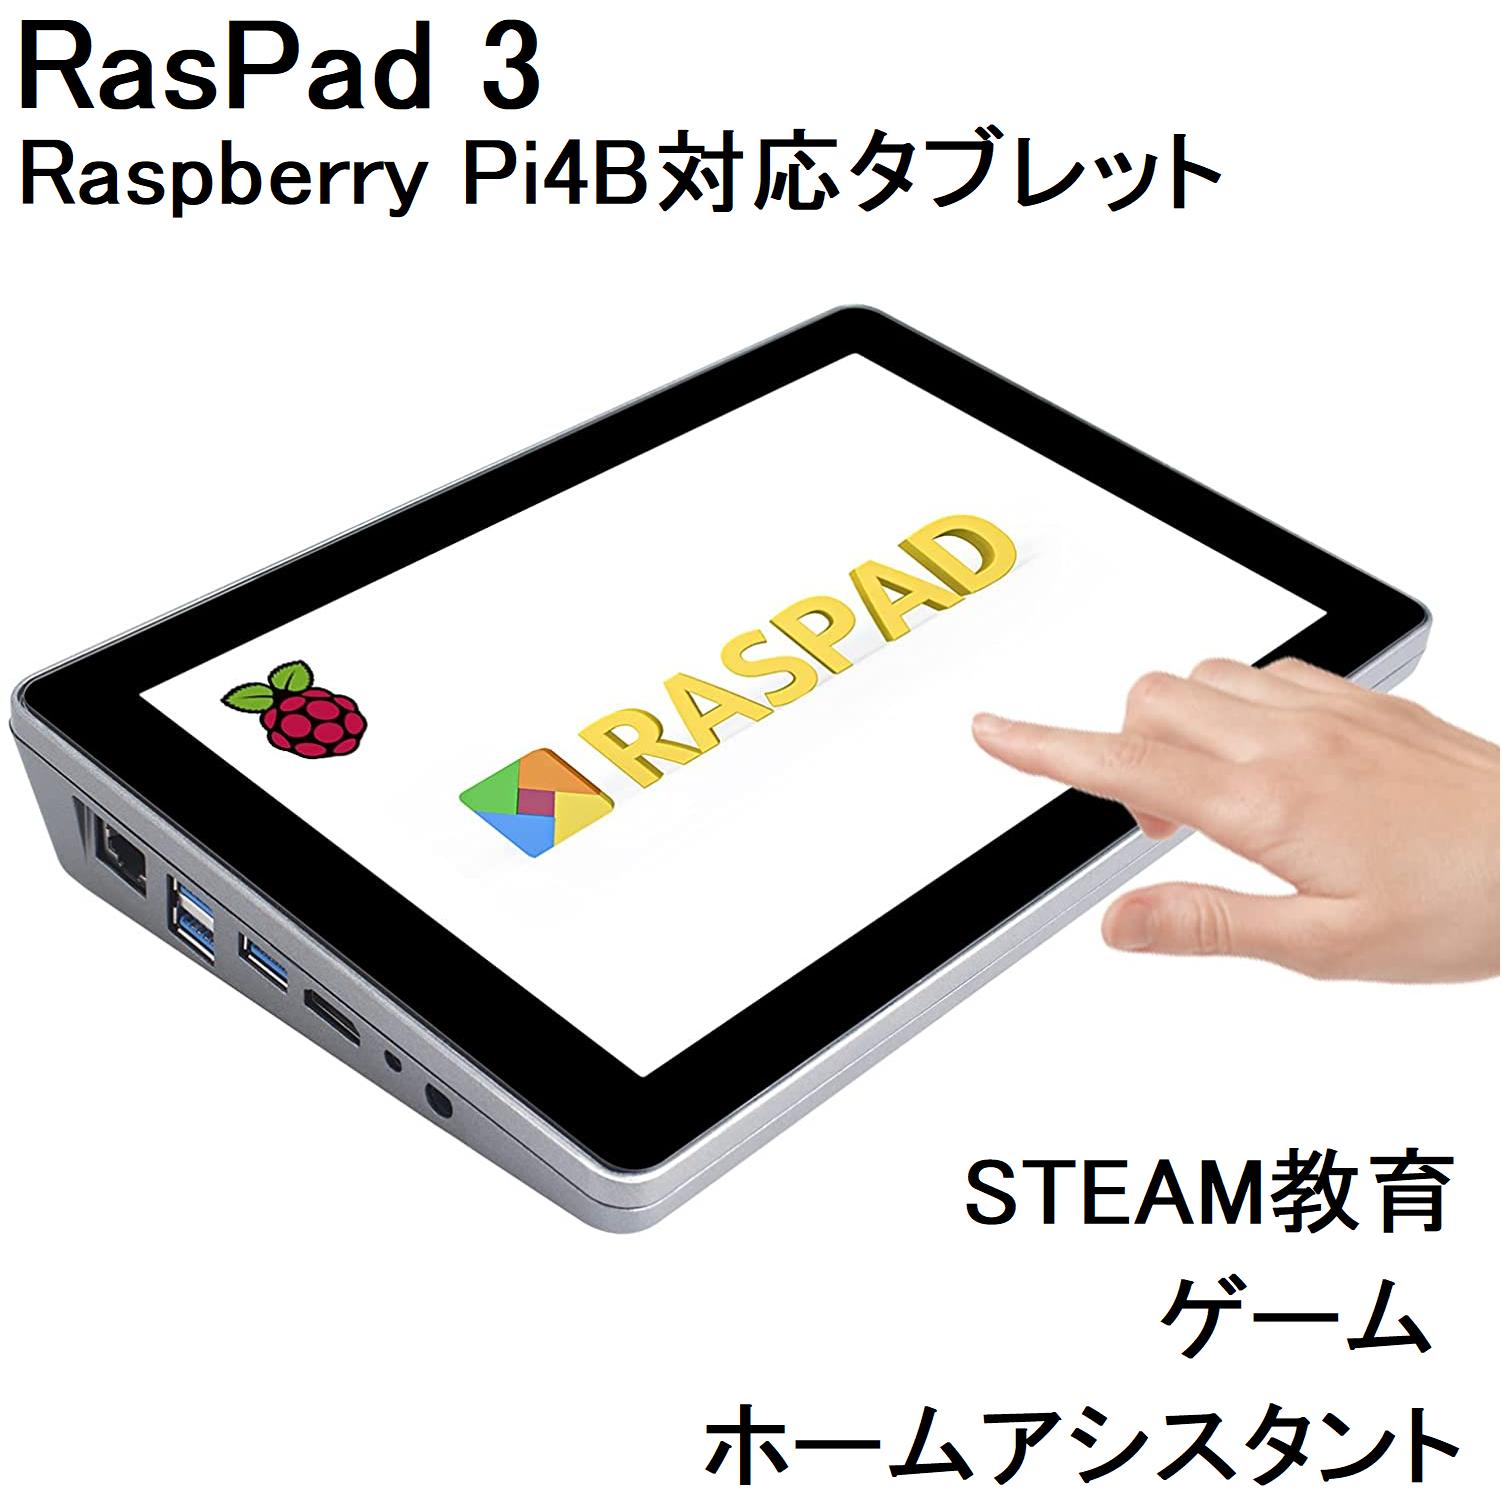 楽天X-RainbowRaspberry Pi タブレット RasPad 3.0 ポータブル Raspberry Pi 4B ディスプレイ バッテリー 冷却ファン スピーカー内蔵 一体型タッチモニター IoT 自動操縦プロジェクト ゲーム 3Dプリント プログラミング学習用 SunFounder